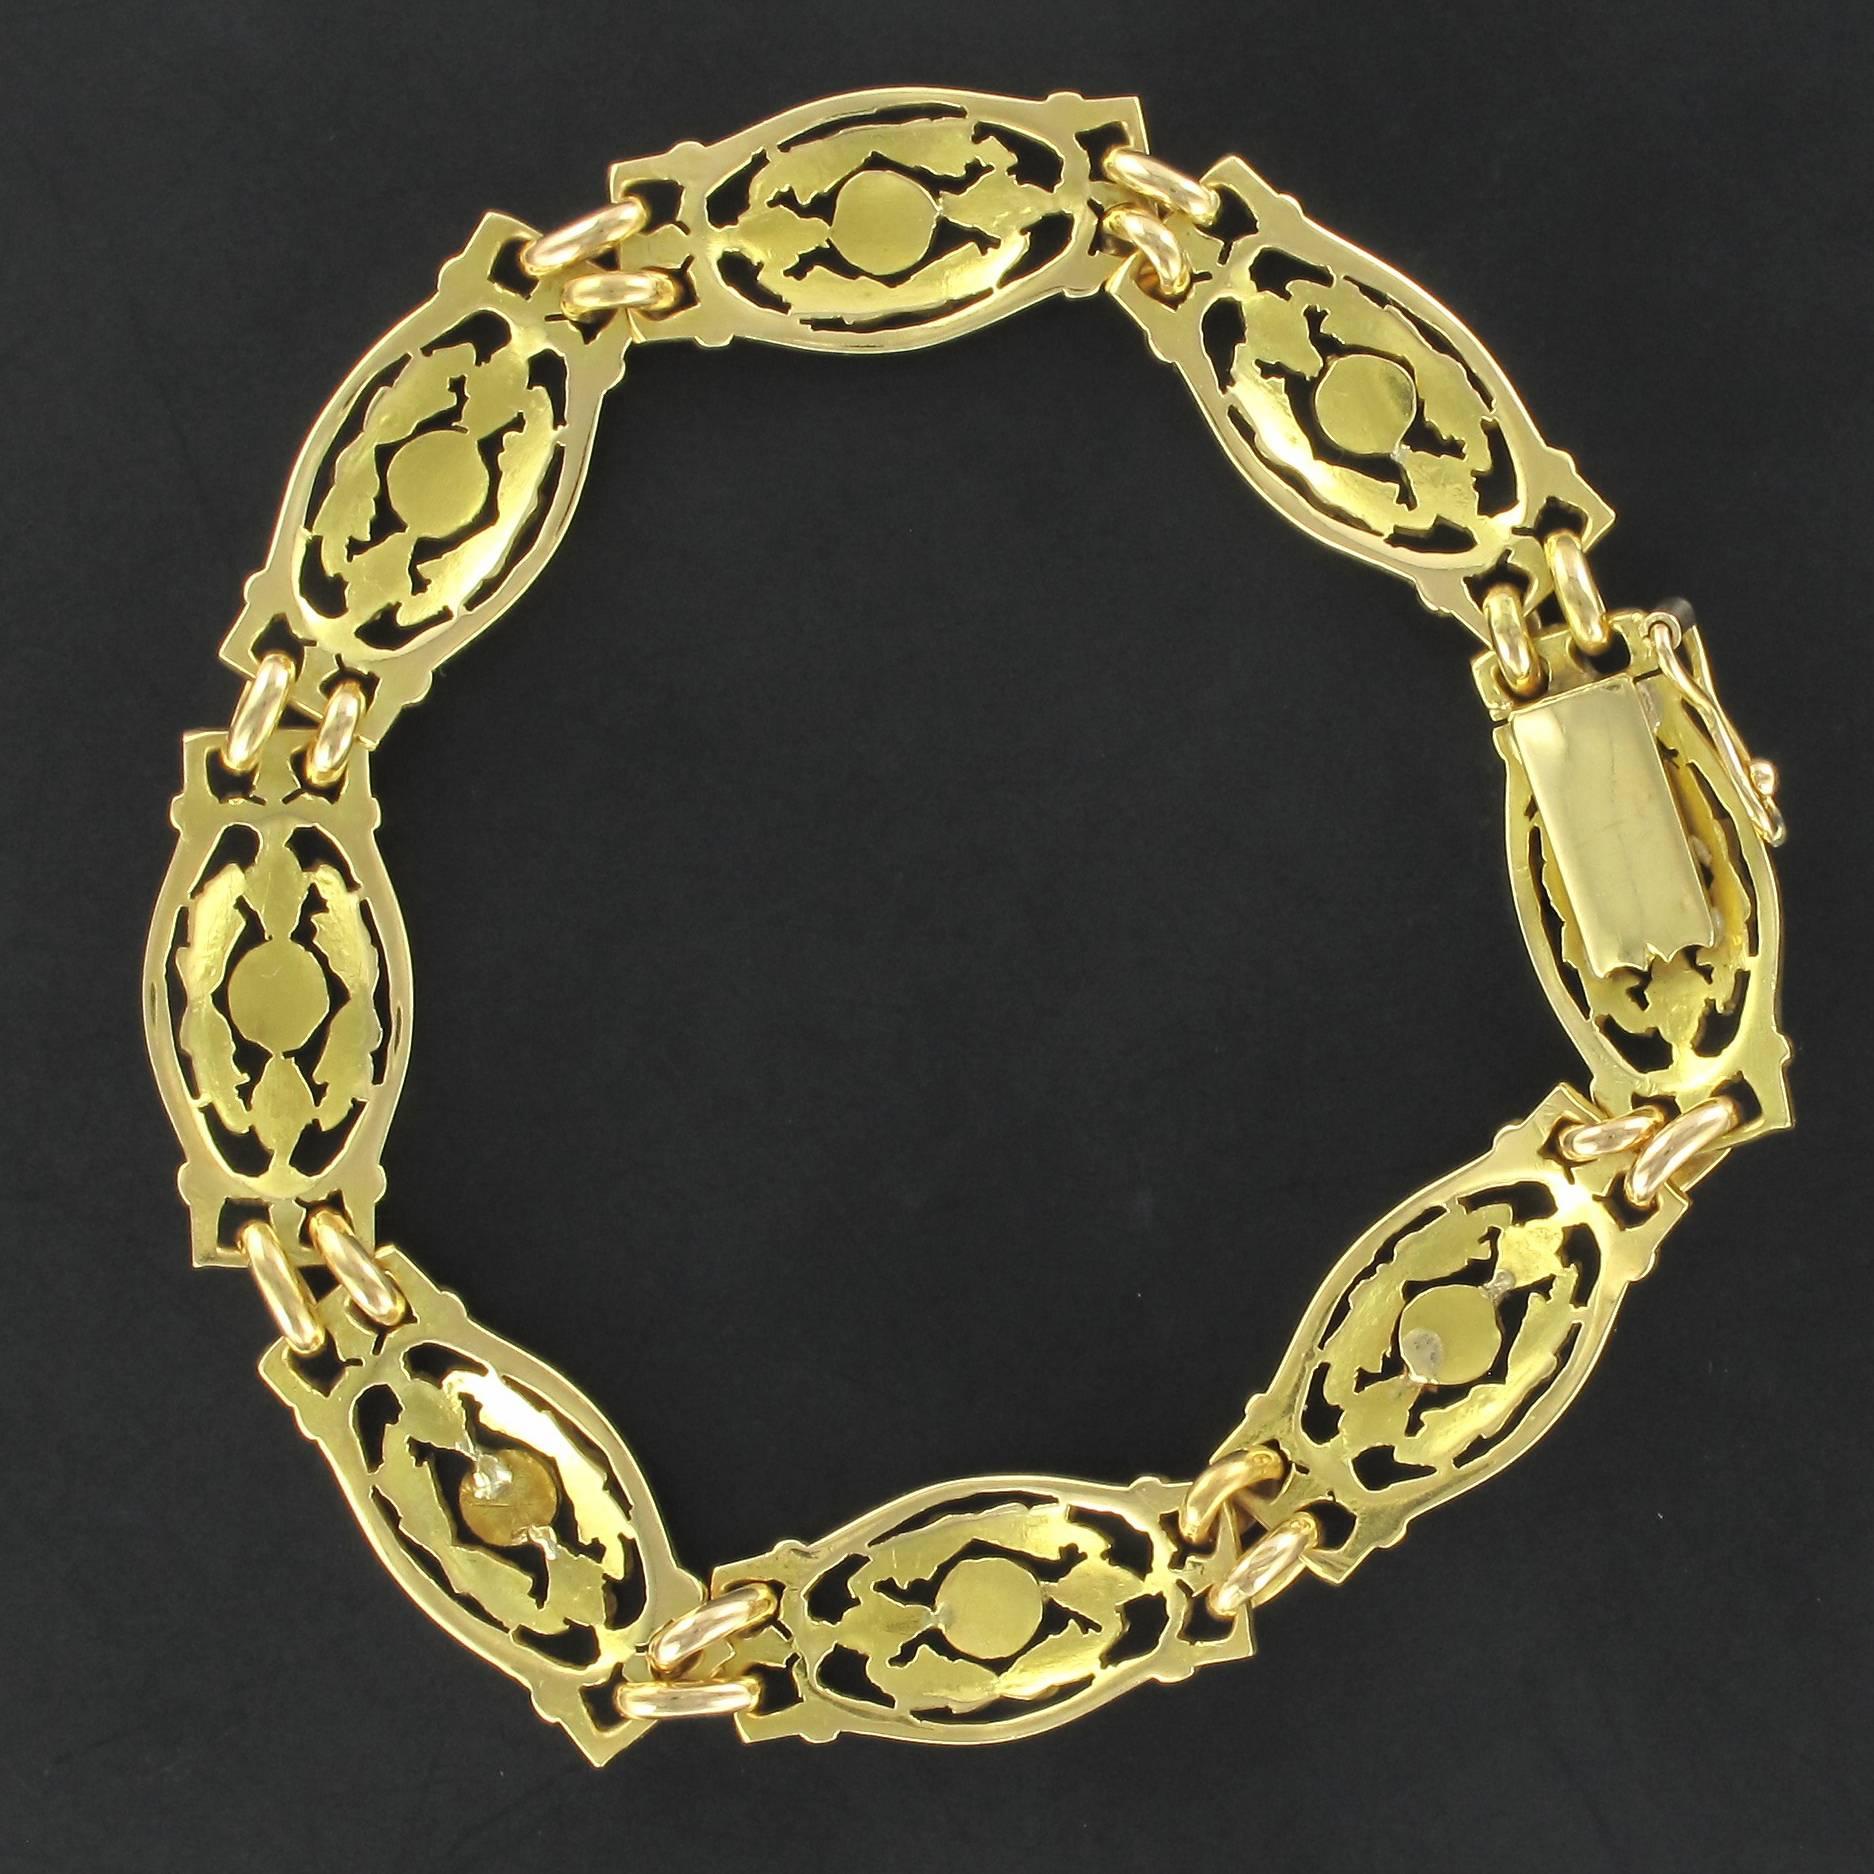 Women's French 1900s Belle Époque 18 Karat Yellow Gold Bracelet with Floral Motifs